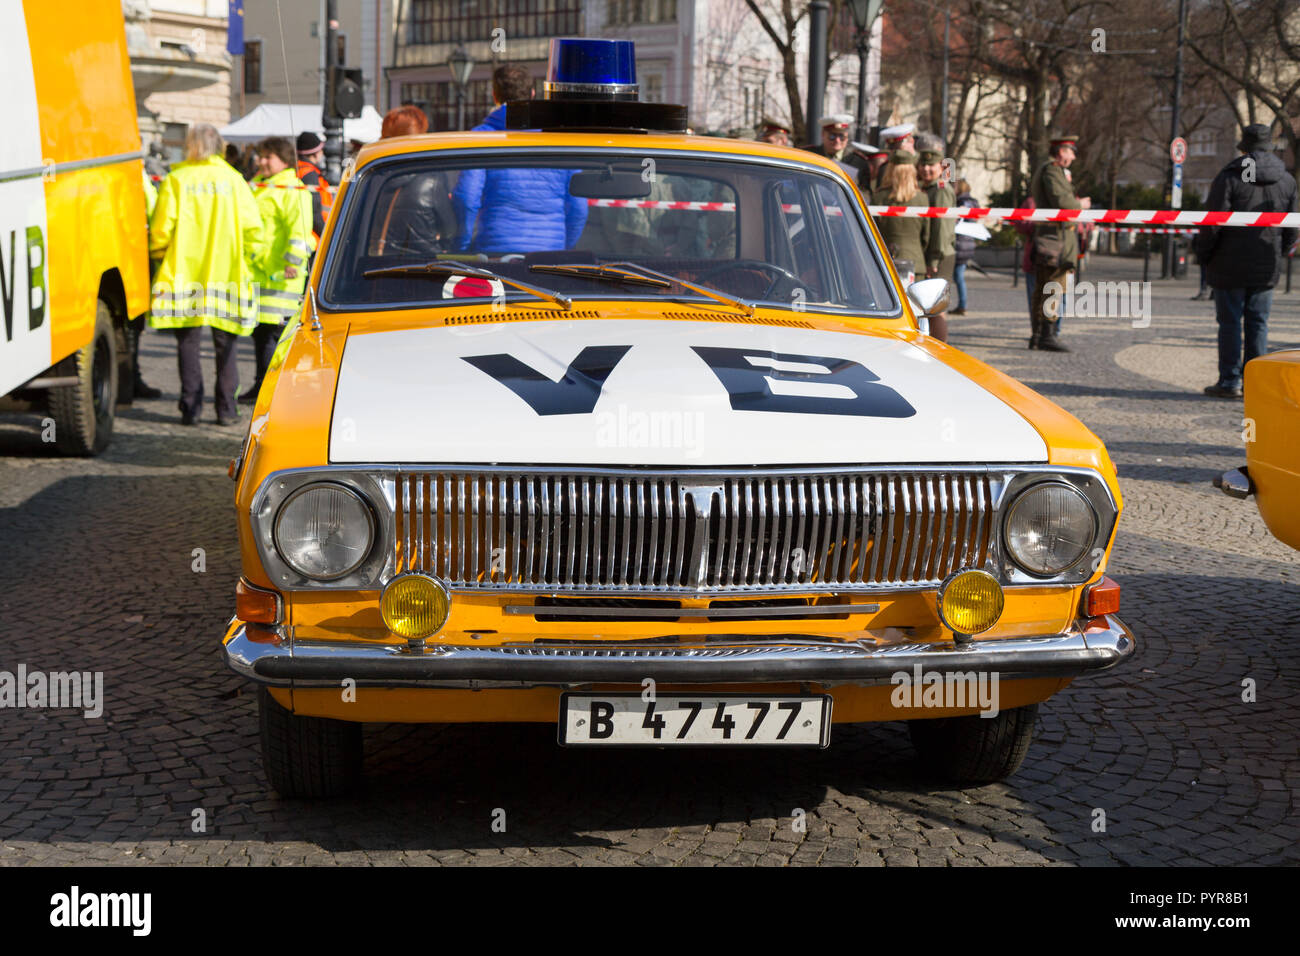 Una rievocazione della candela manifestazione di 1988/3/25 con il famigerato 'VB' (Verejna bezpecnost comunista) auto della polizia e poliziotti. Foto Stock